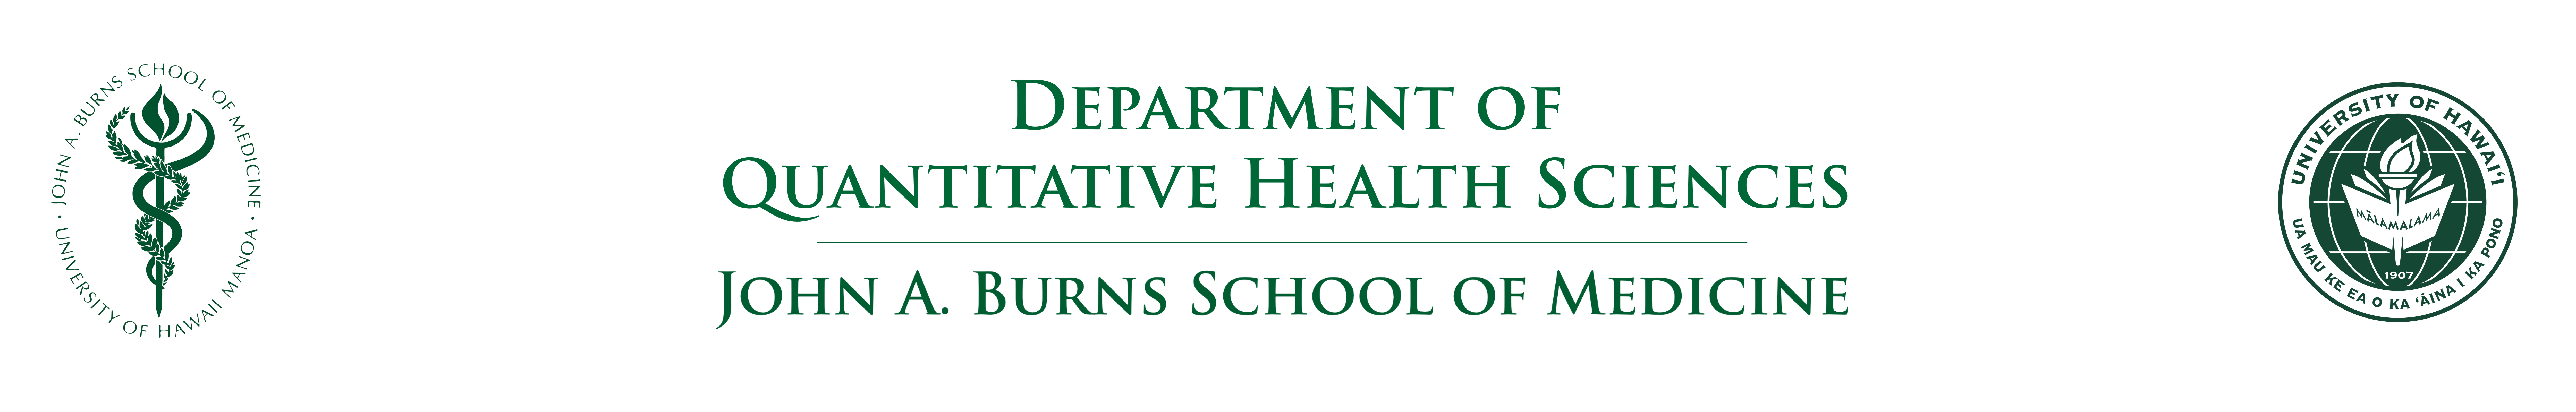 Department of Quantitative Health Sciences